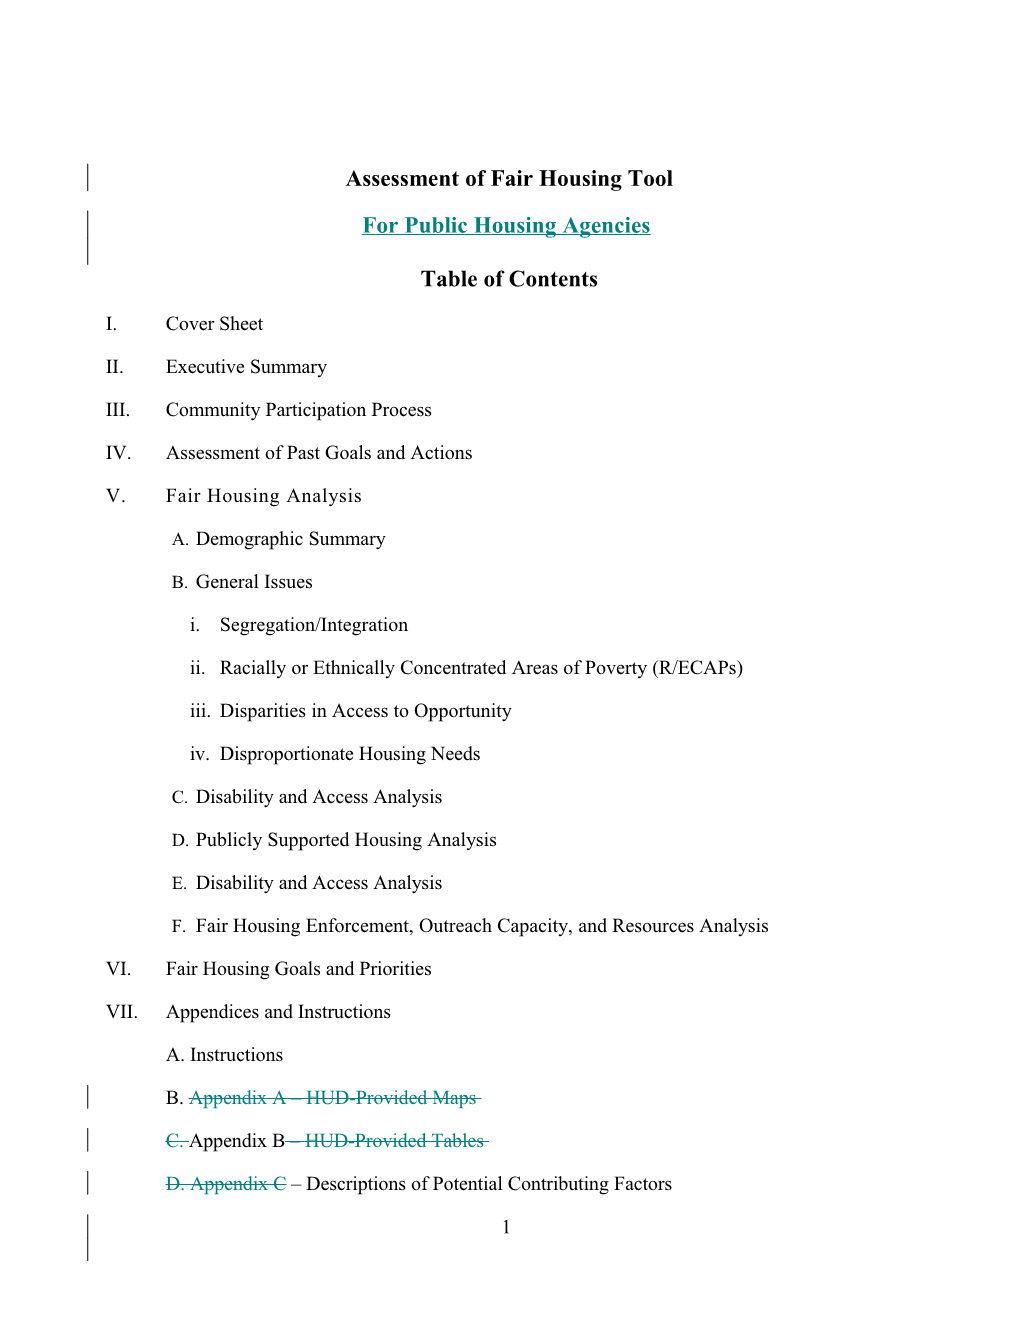 AFH Tool for Public Housing Agencies Comparison Document